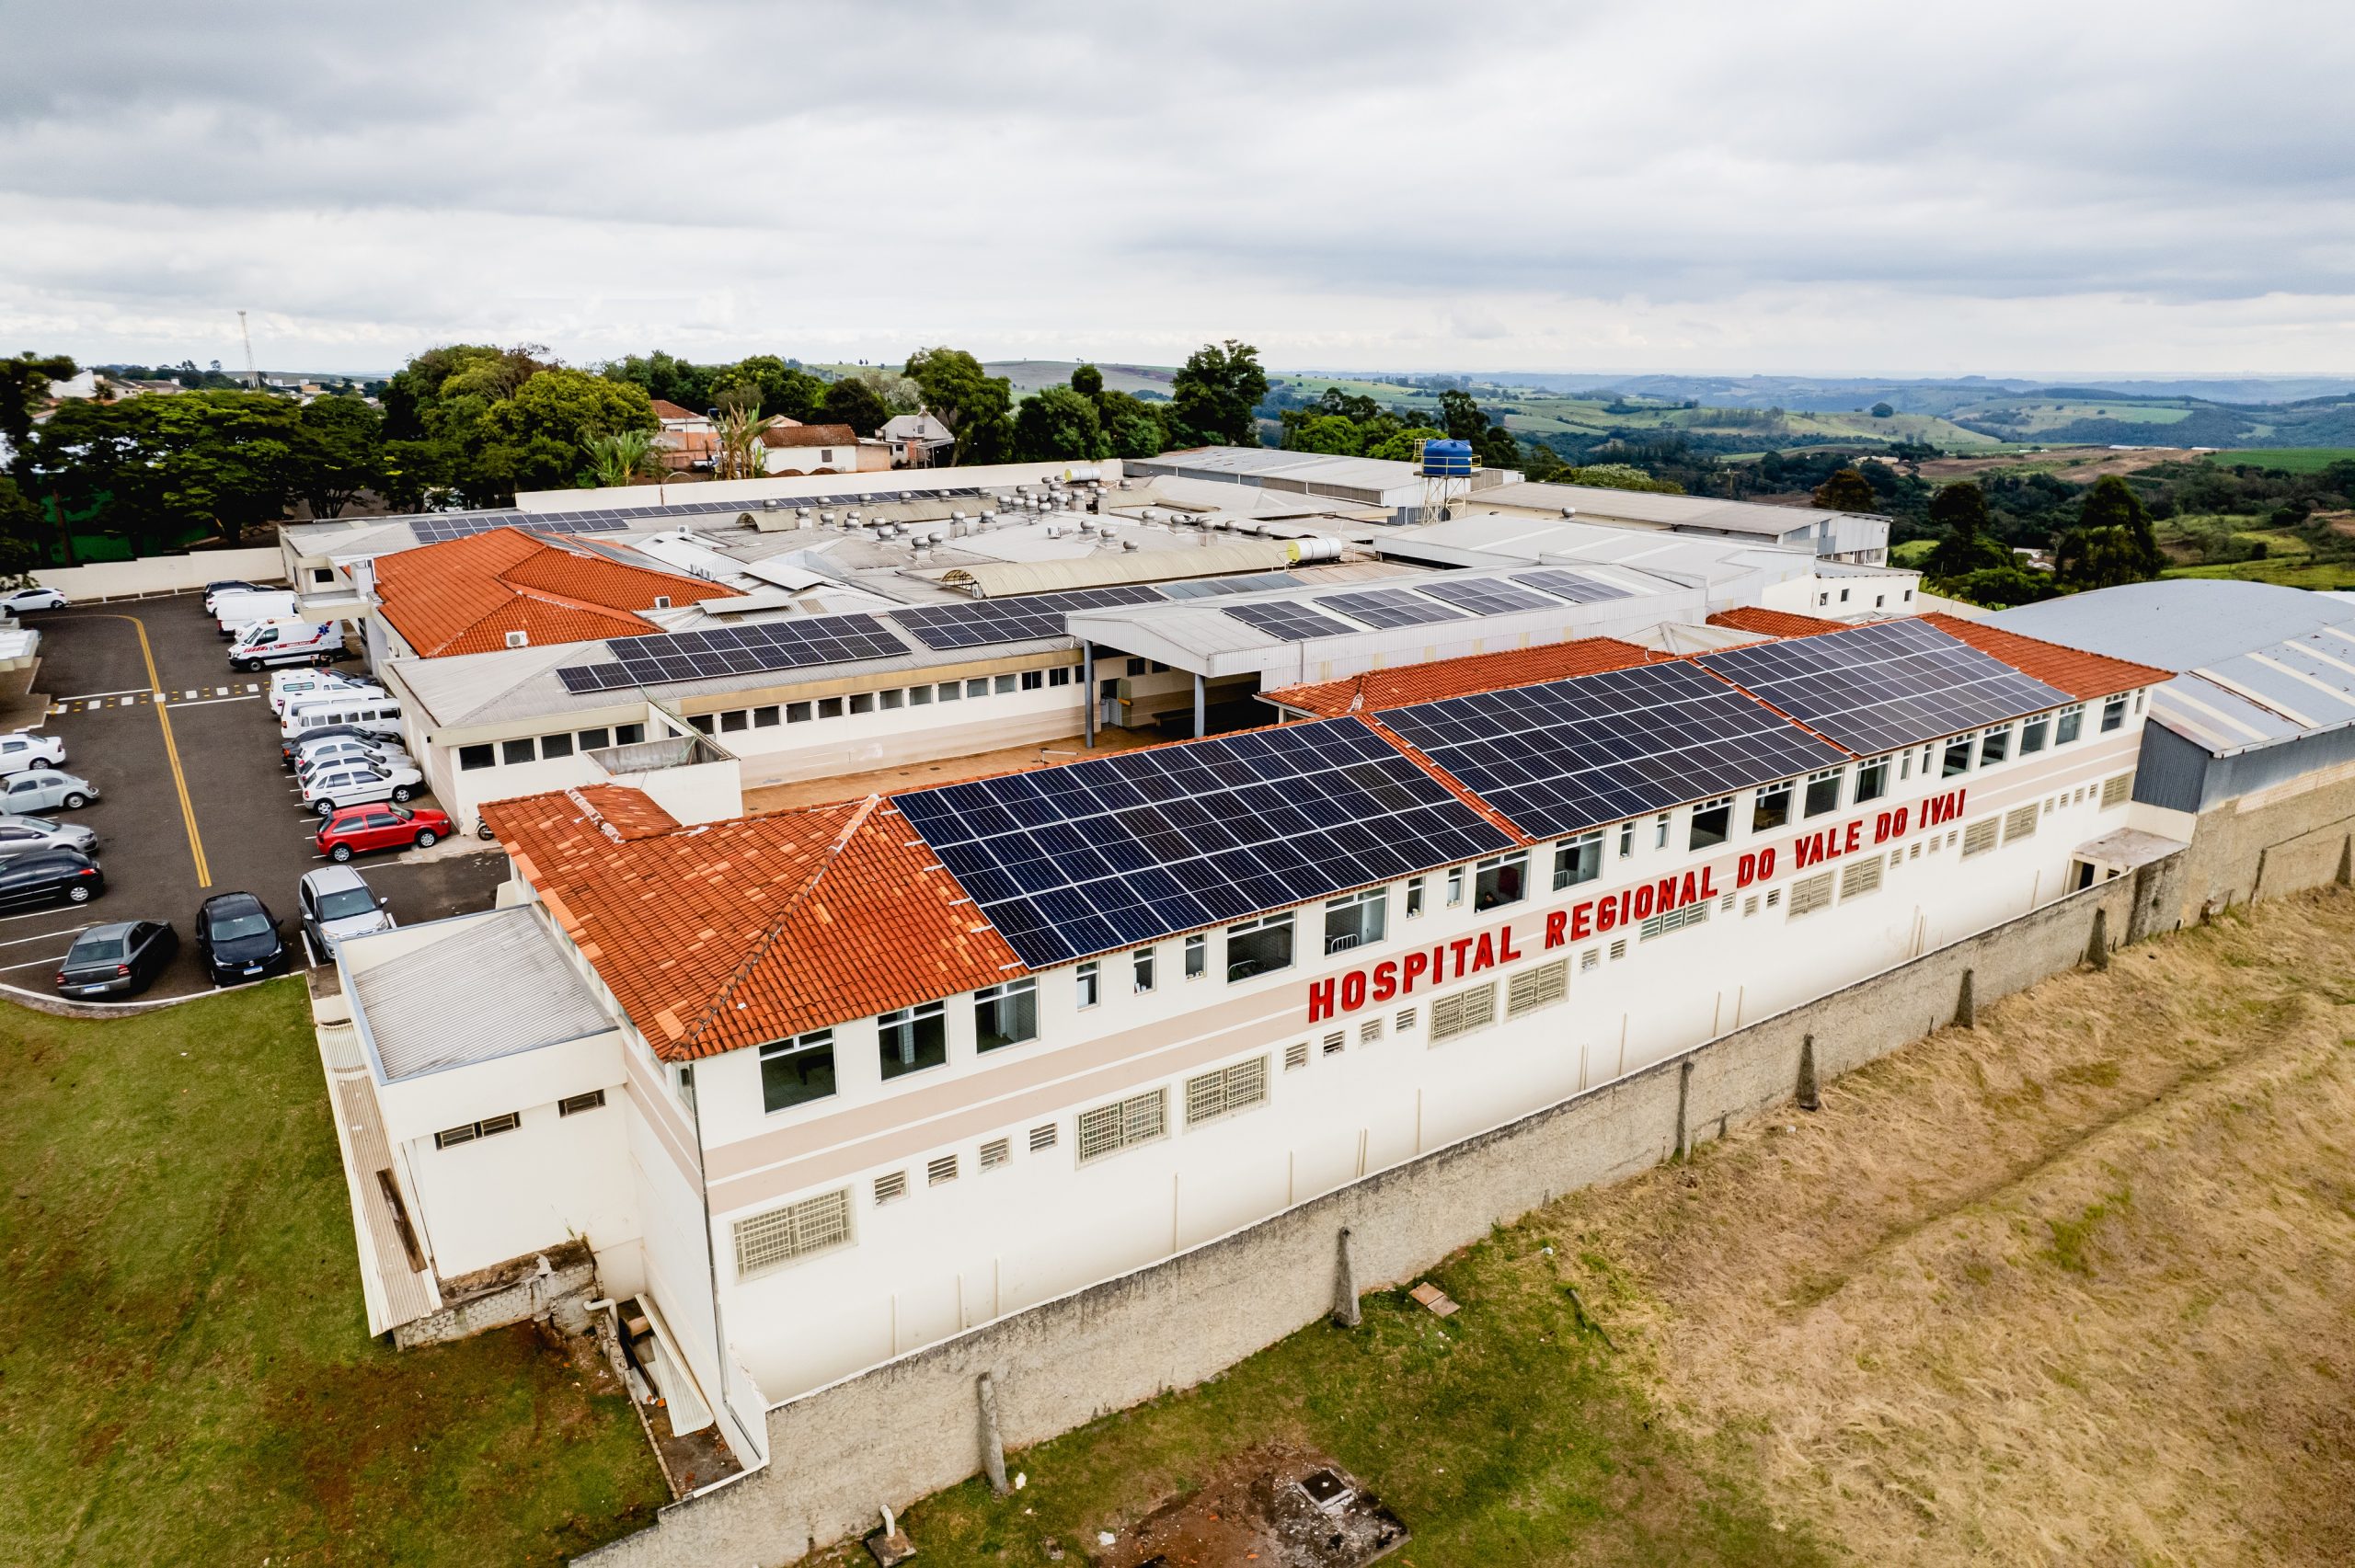 Imagem aérea de prédio baixo com placas fotovoltaicas sobre o telhado e na fachada escrito Hospital Regional do Vale do Ivaí